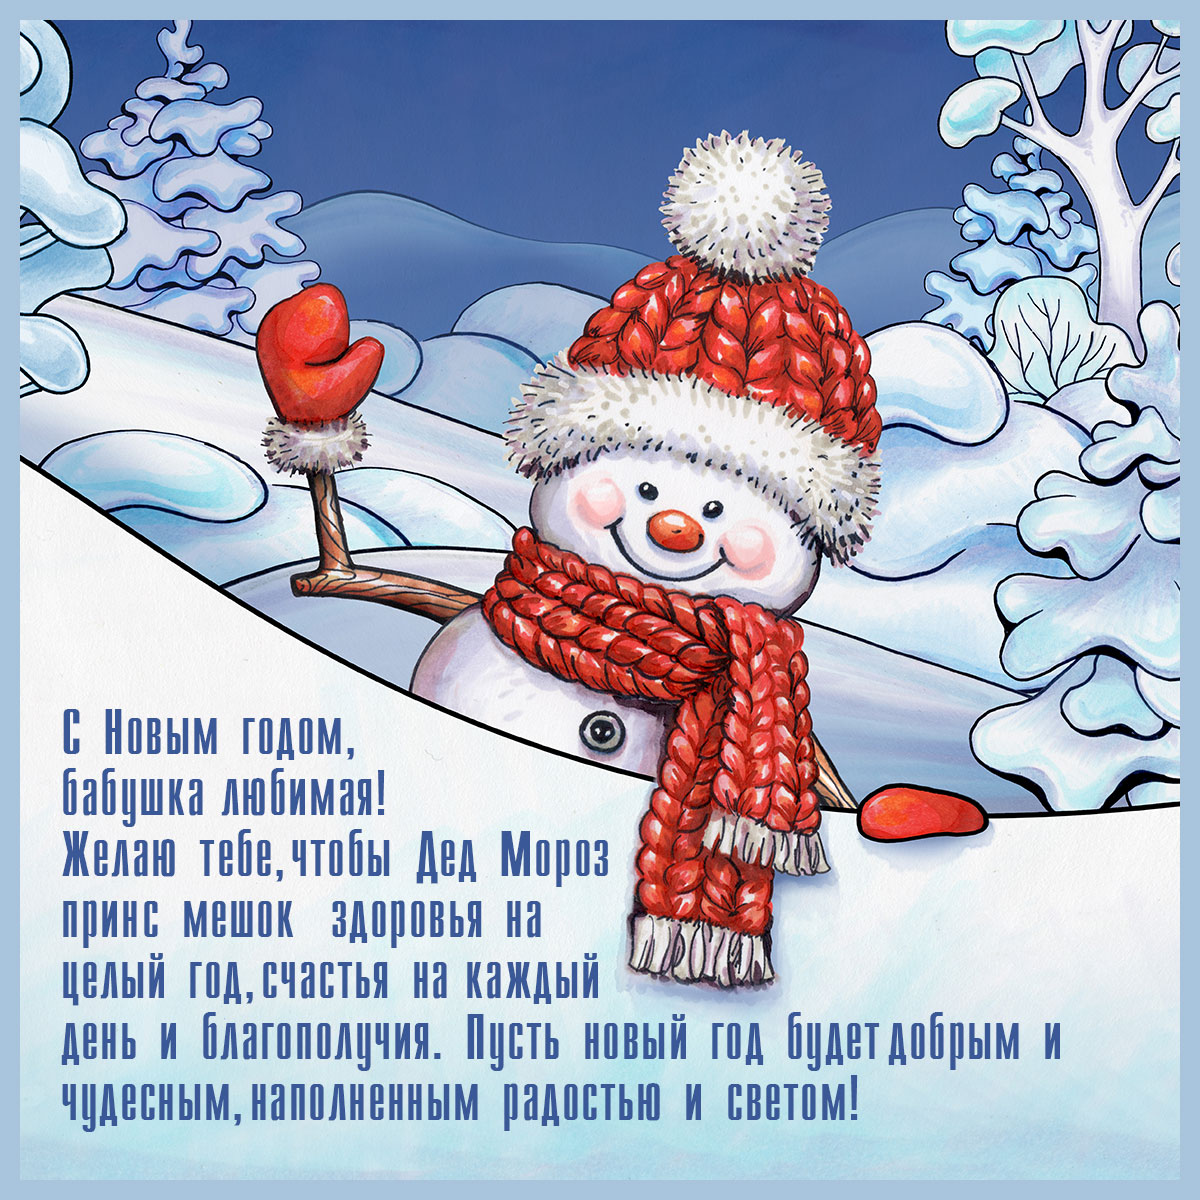 Голубая открытка бабушке на новый год - снеговик в вязаном шарфе и шапке на фоне сугробов в лесу.